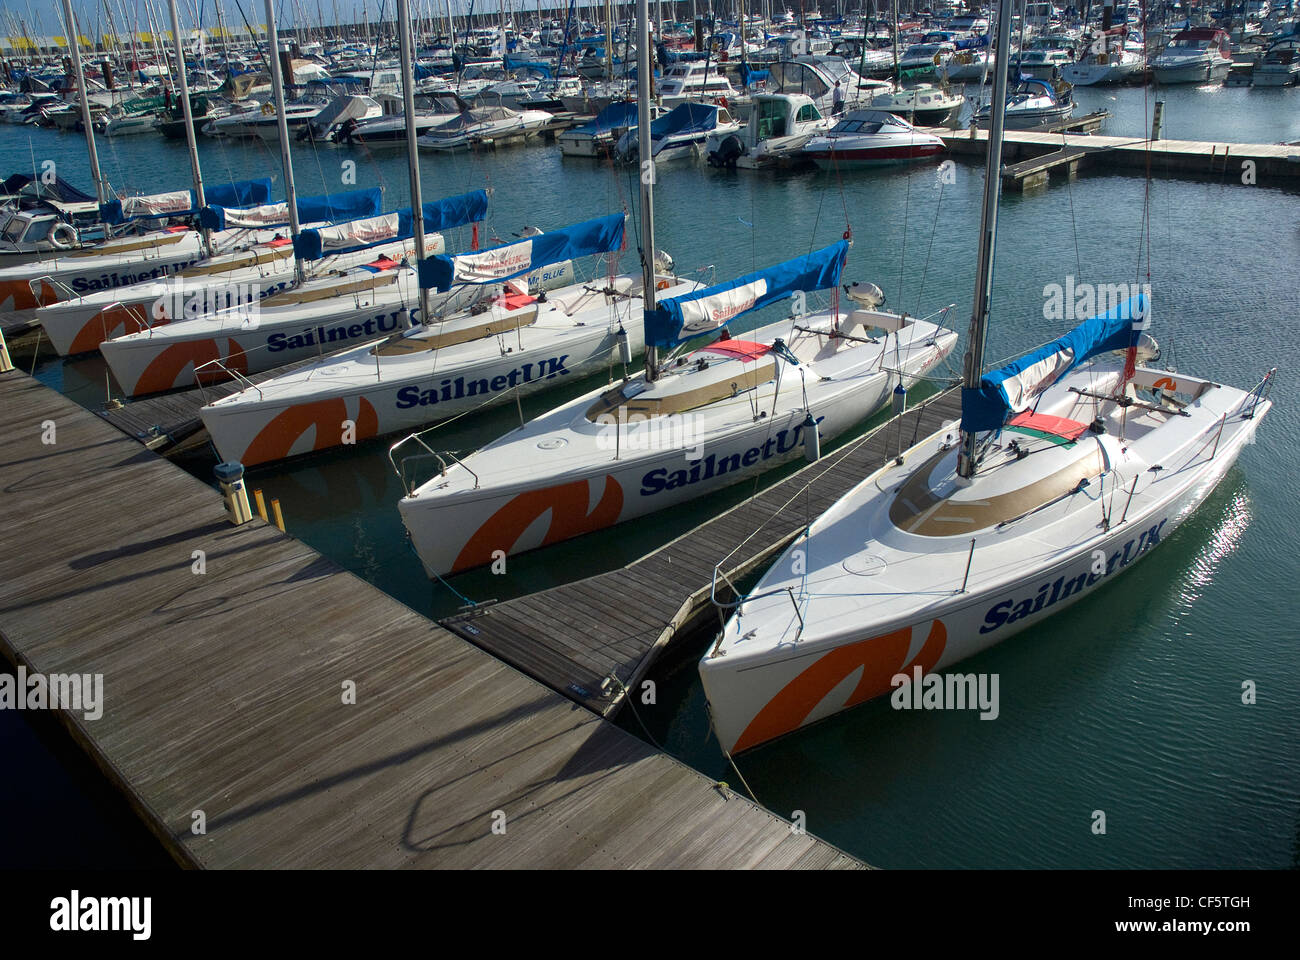 A fleet of SailnetUK experience and training yachts in Brighton Marina. Stock Photo